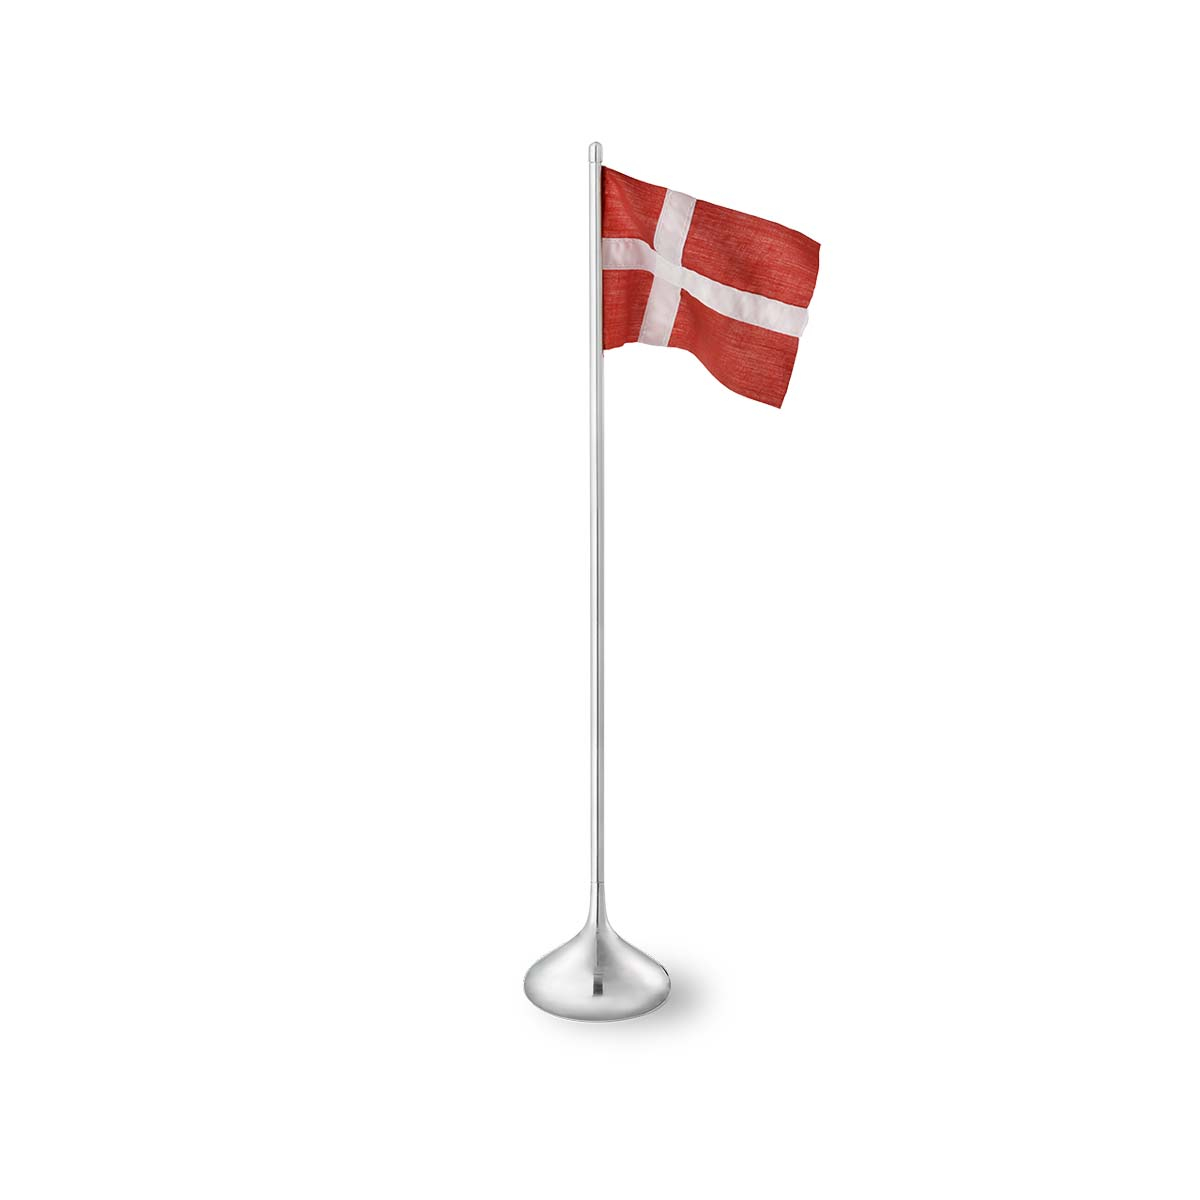 Bordflag dansk H35 sølvfarvet